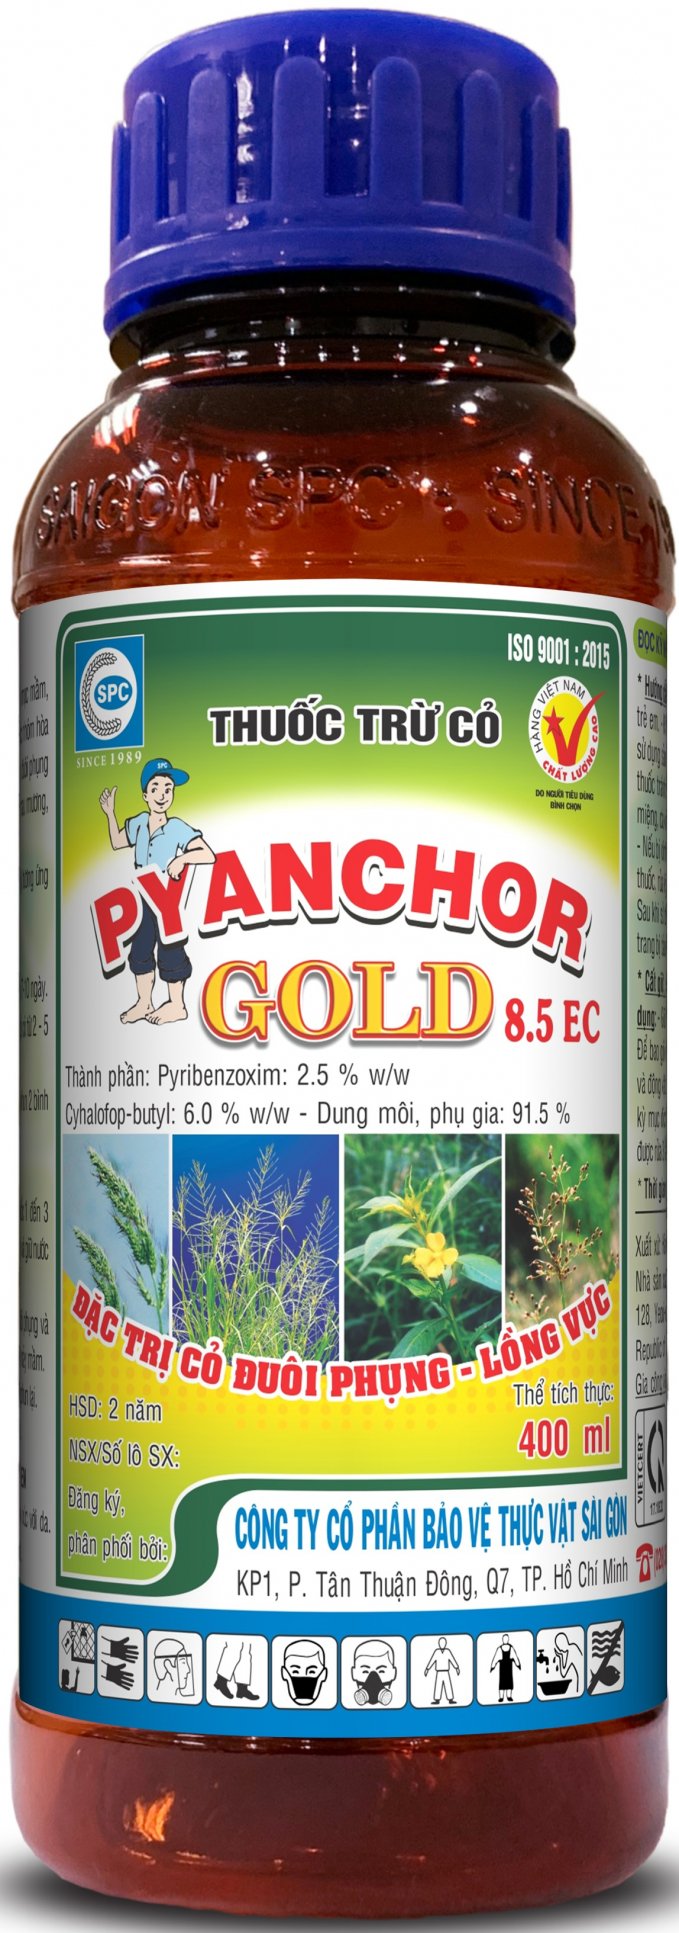 Thuốc trừ cỏ Pyanchor Gold 8.5EC mới của Công ty LG - CHEM Hàn Quốc sản xuất, được Công ty Cổ phần Bảo vệ Thực vật Sài Gòn phân phối độc quyền. Ảnh: Ký Ngọt.